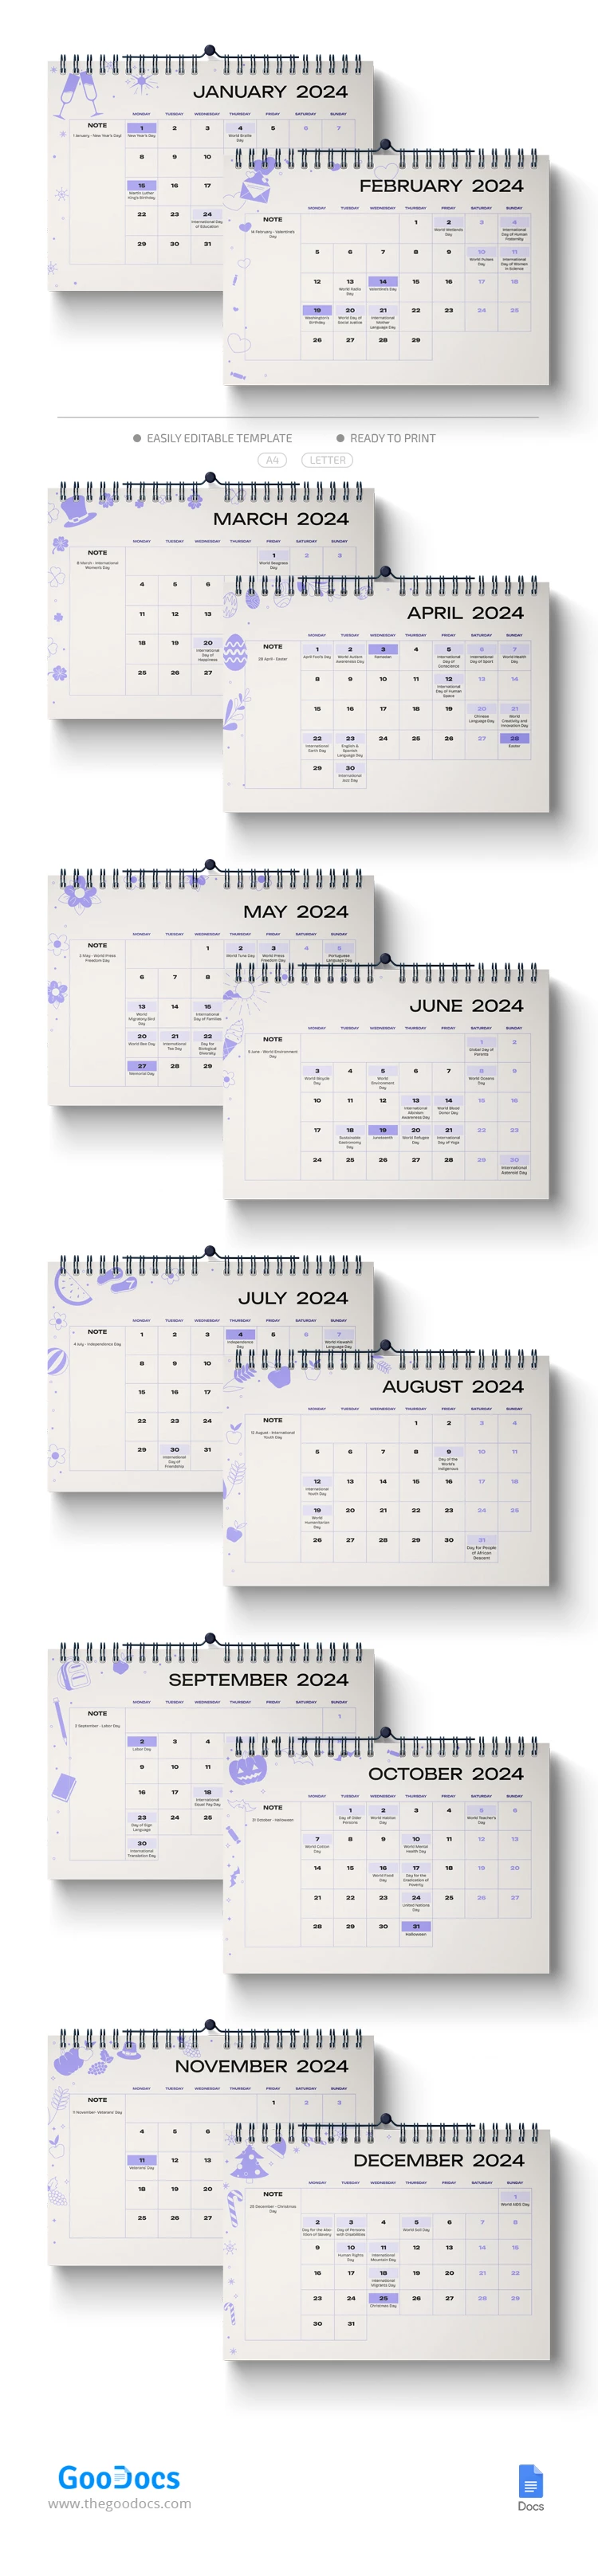 2024 Feiertagskalender - free Google Docs Template - 10068550